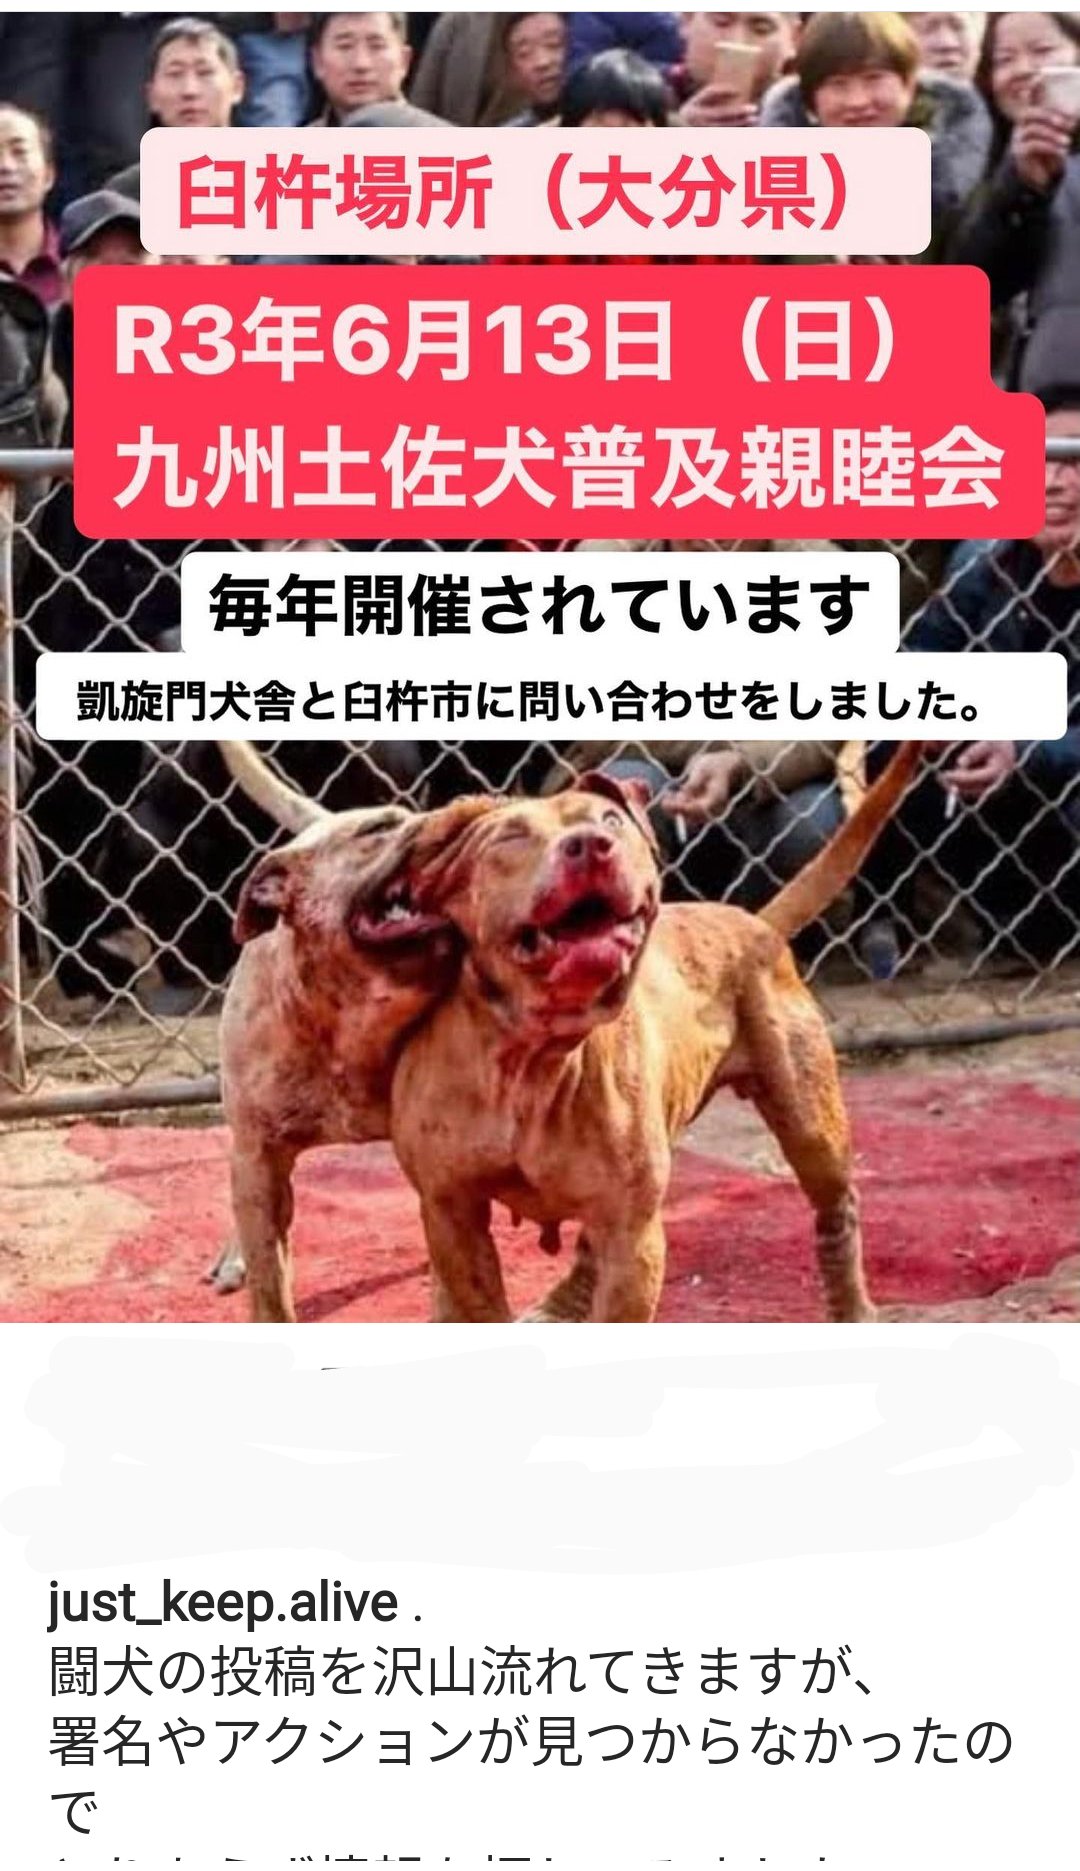 Kumiko 6月13日 日 に闘犬 が行われます おそらく大分県臼杵市のどこかだそうです ご存知の方はいませんか 犬たちを闘わせ楽しむ娯楽 昔からの文化だから そんな文化は廃止してください 多くの犬が死んだり重症を負ったりしてきました どうか声を届けて